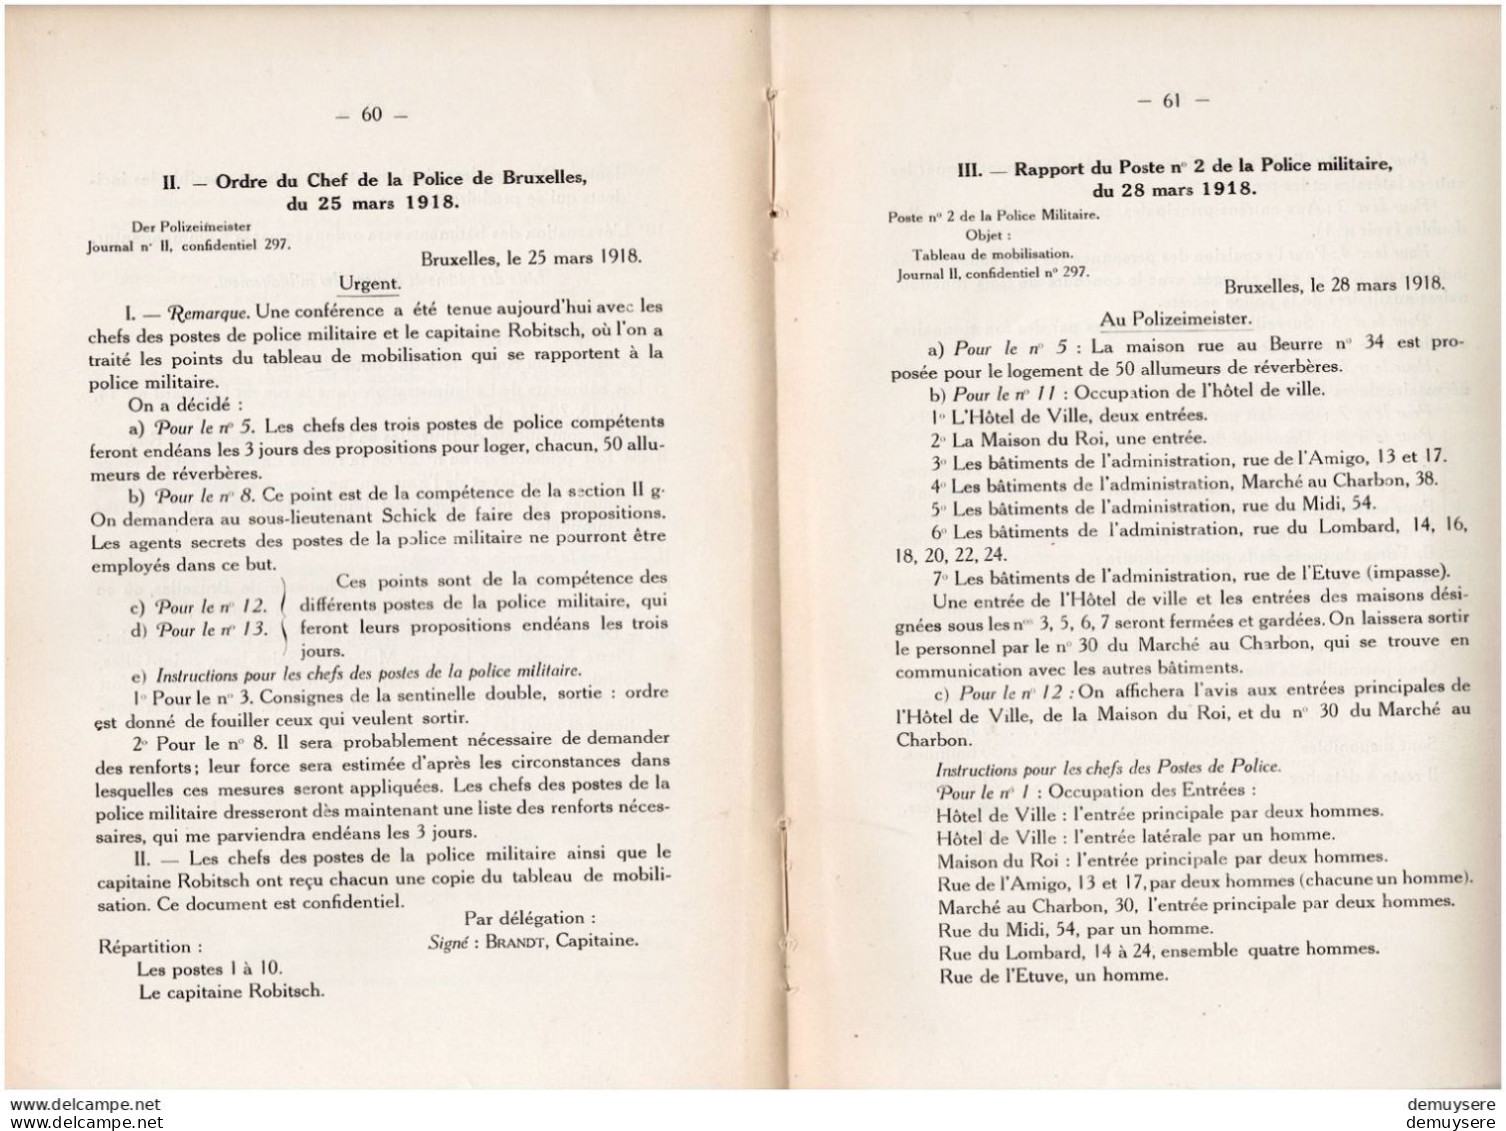 BOEK 001  - BULLETIN DE LA COMMISSION DES ARCHIVES DE LA GUERRE 1924 - 104 PAGES - Francese